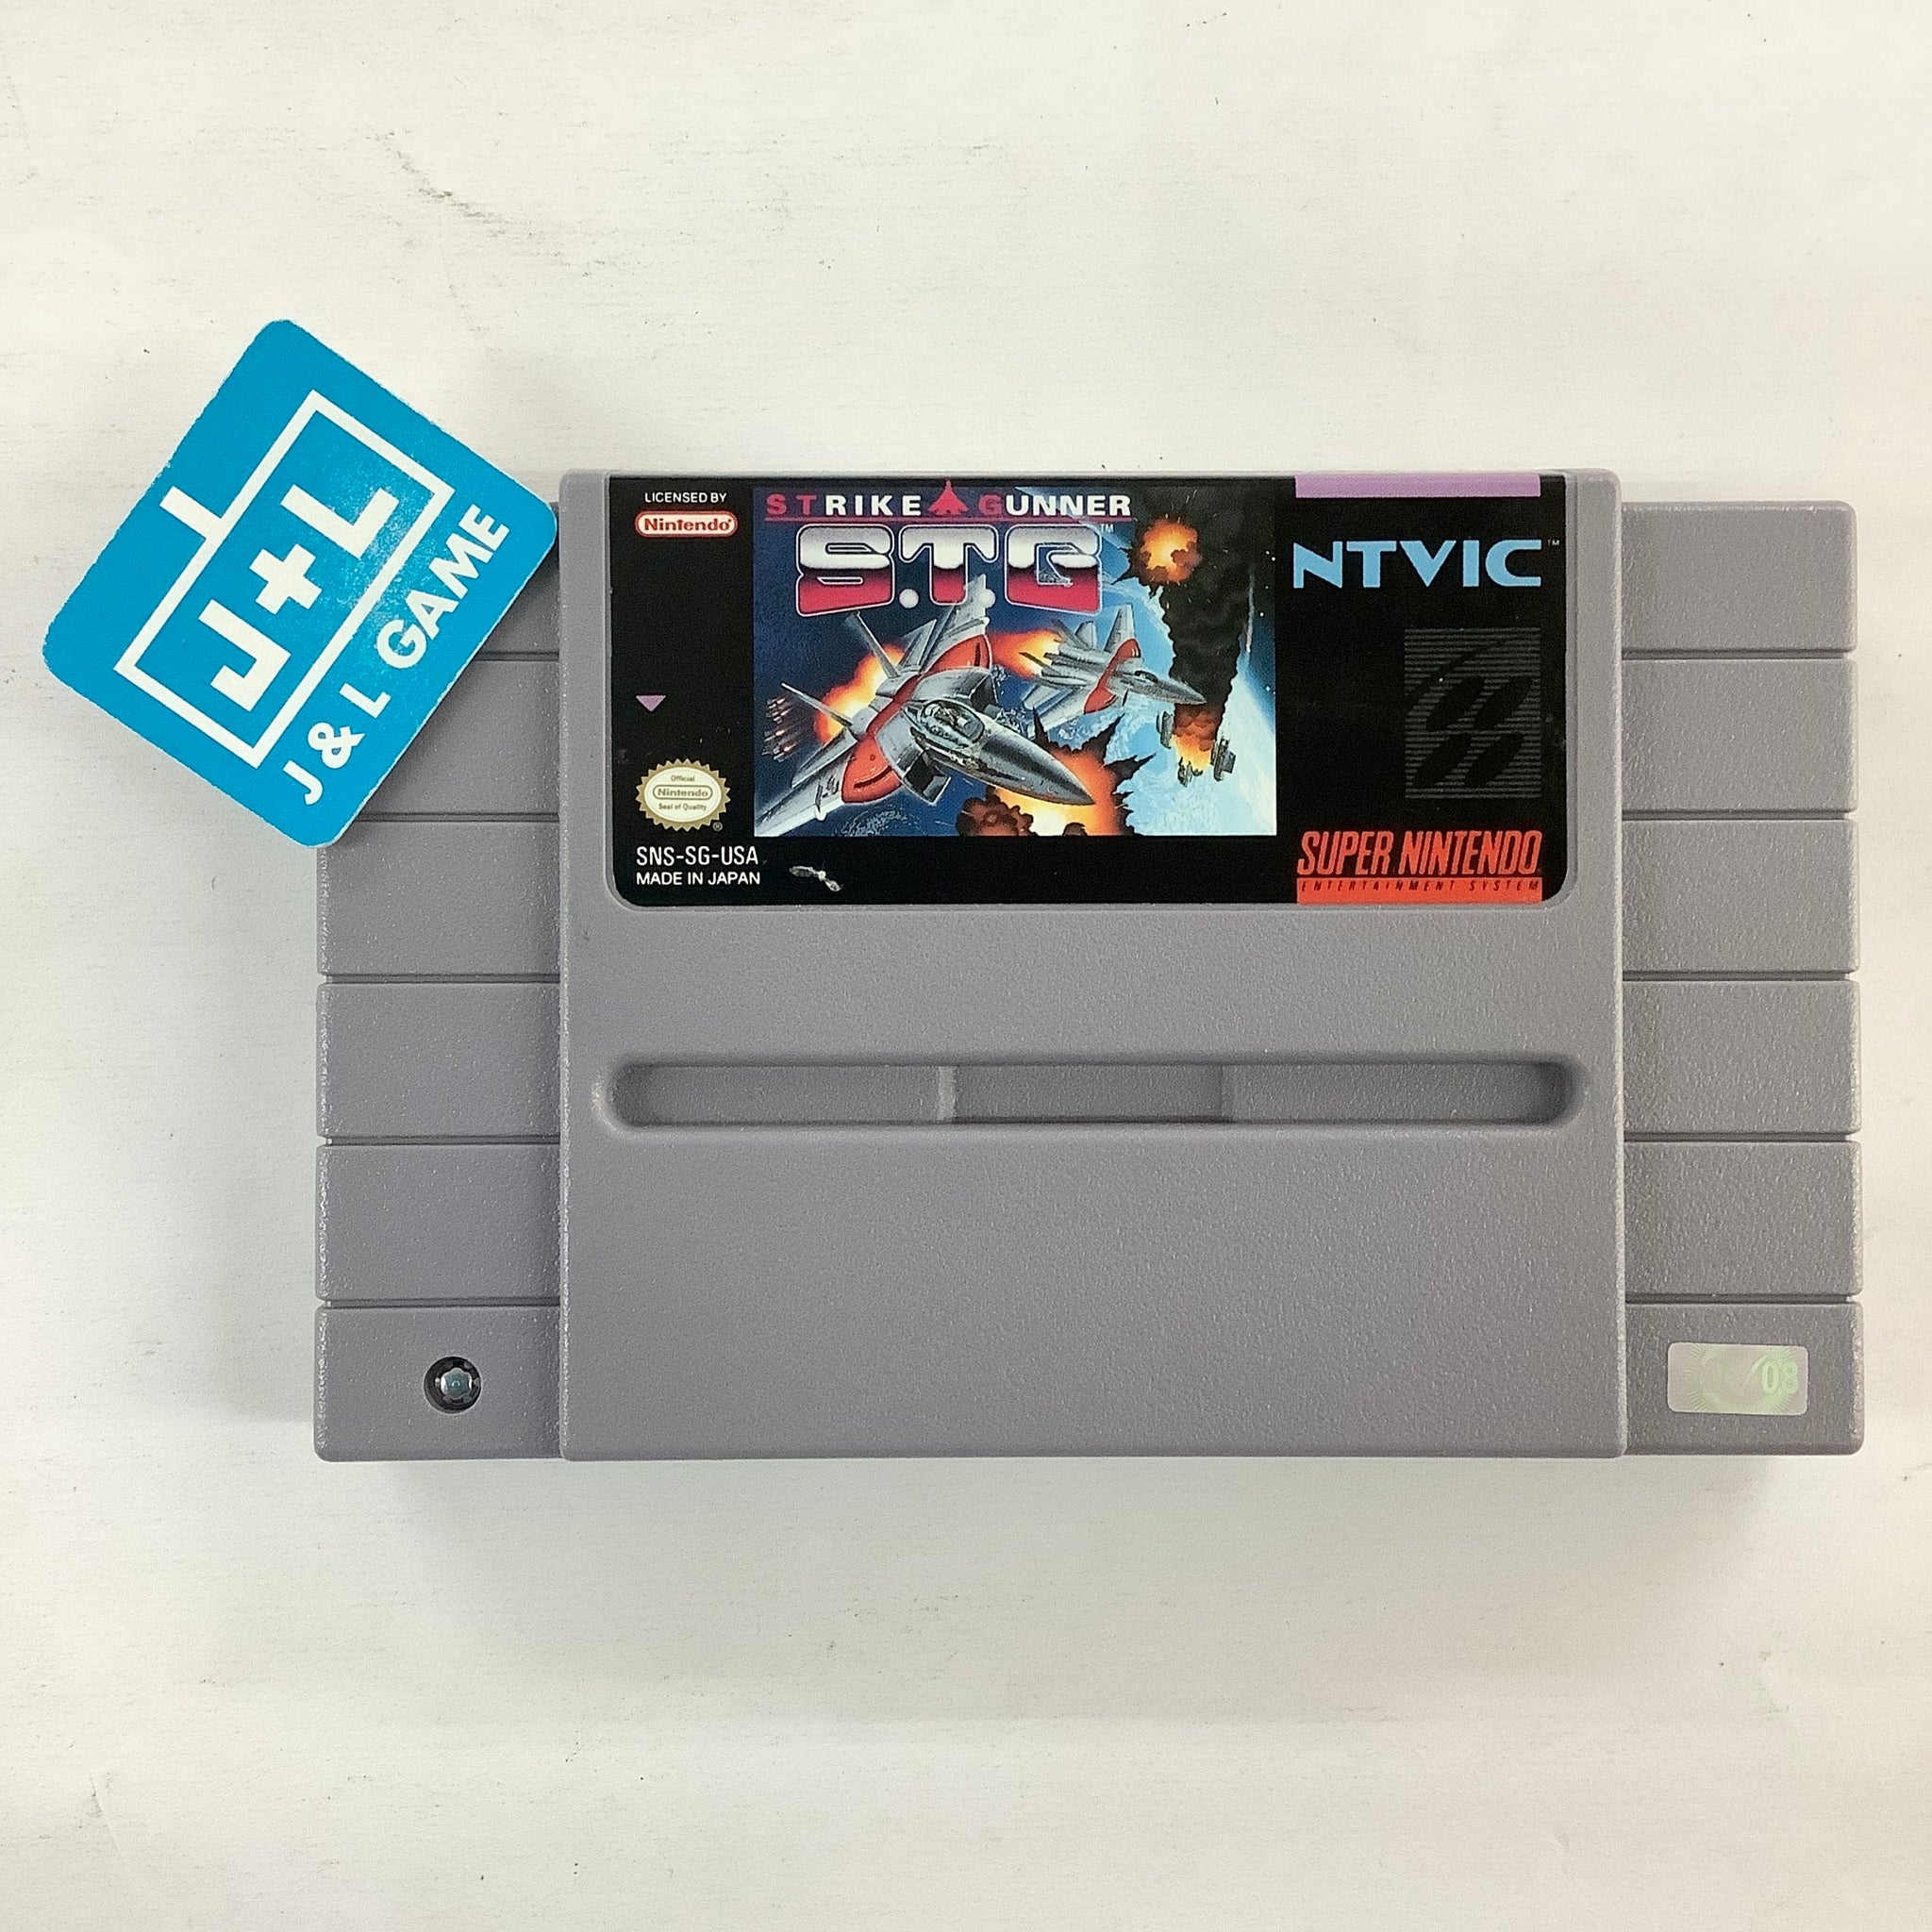 Strike Gunner S.T.G - (SNES) Super Nintendo [Pre-Owned] Video Games NTVIC   